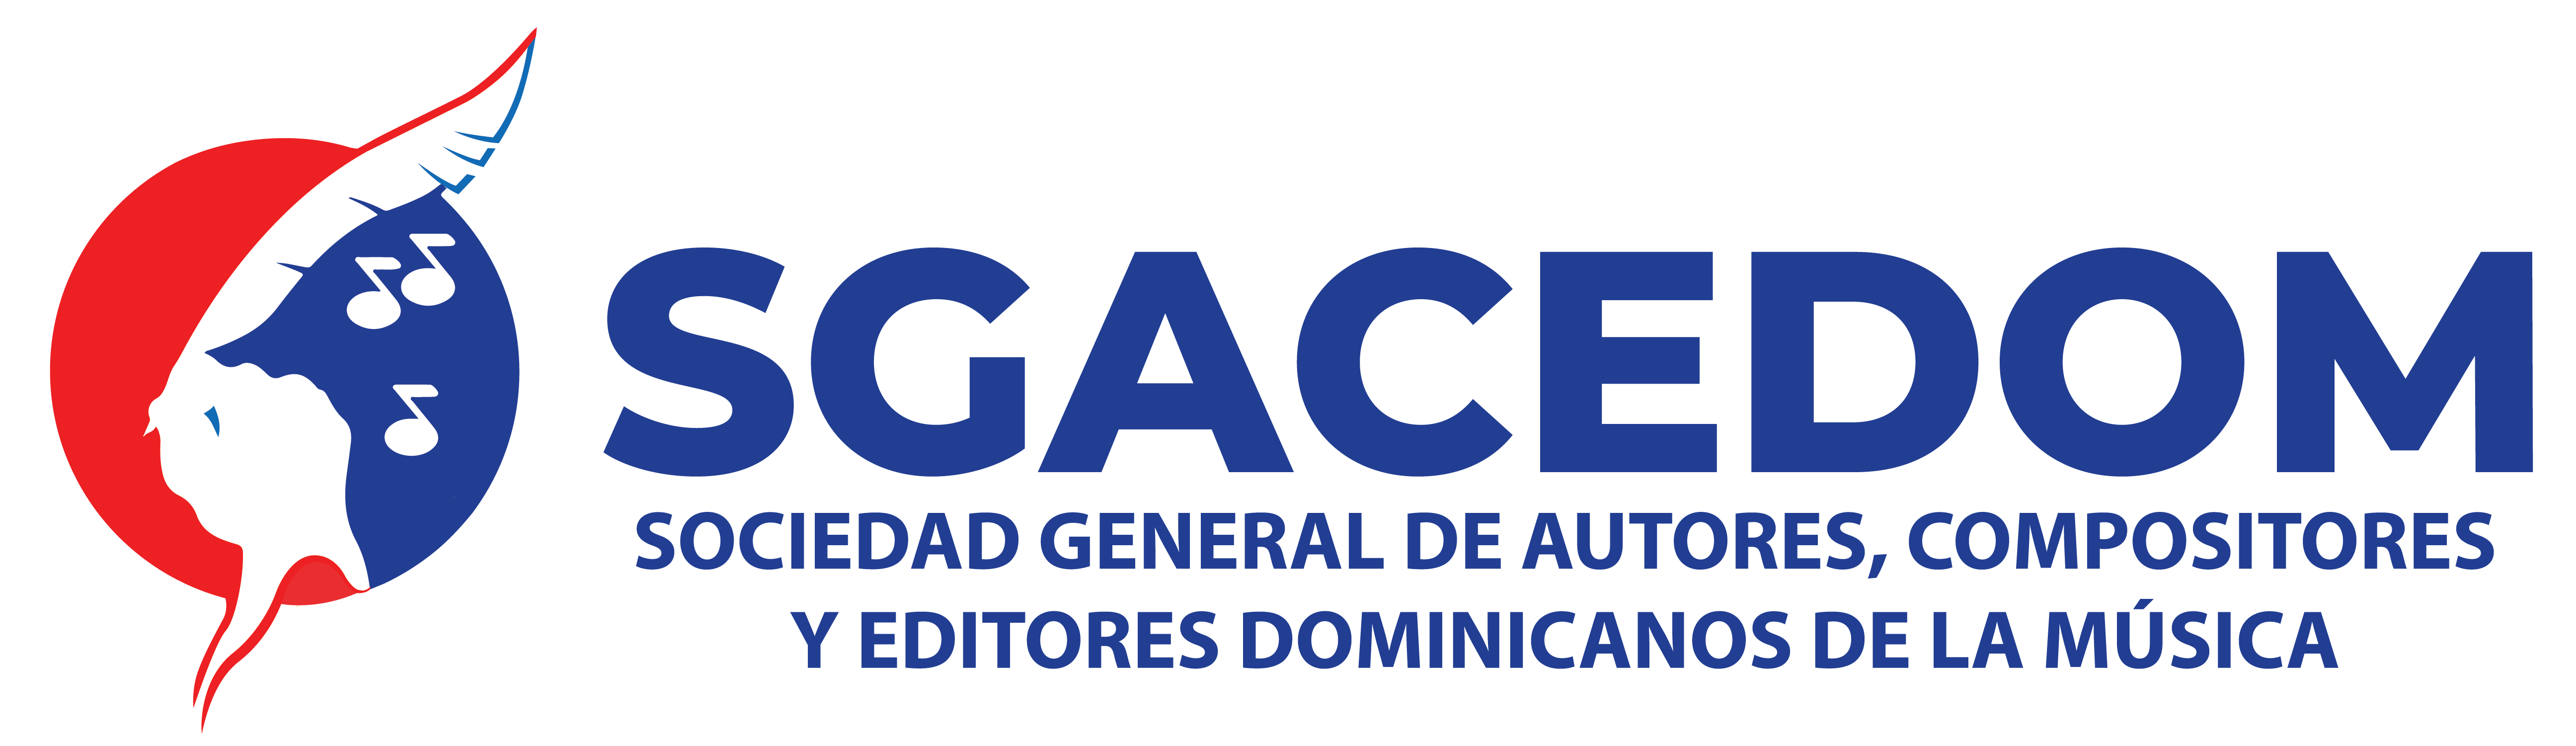 SOCIEDAD GENERAL DE AUTORES DOMINICANOS